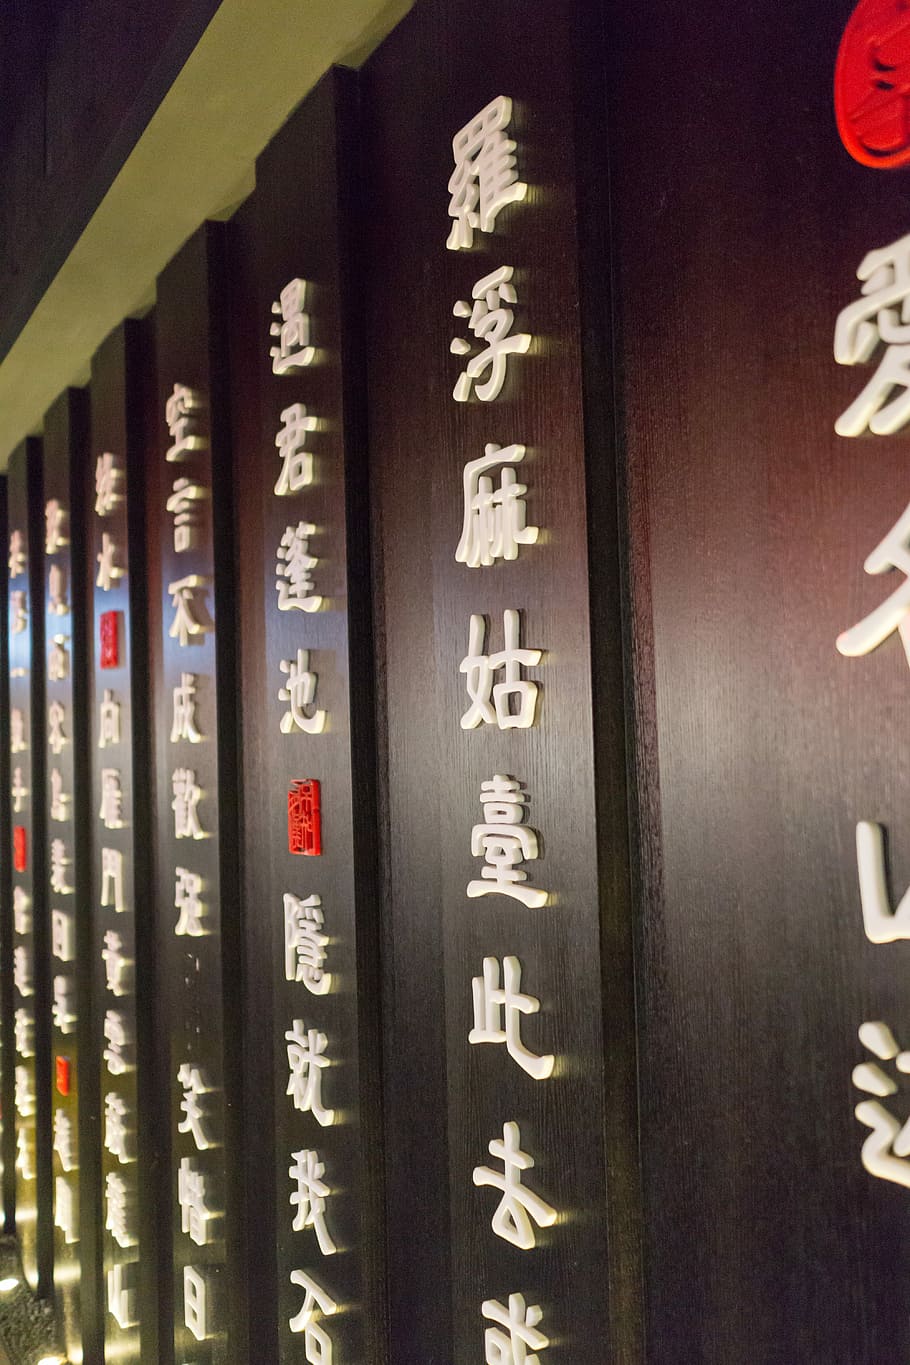 Cina, kaligrafi, tradisional, karakter, oriental, dekorasi, desain, pola, teks, komunikasi